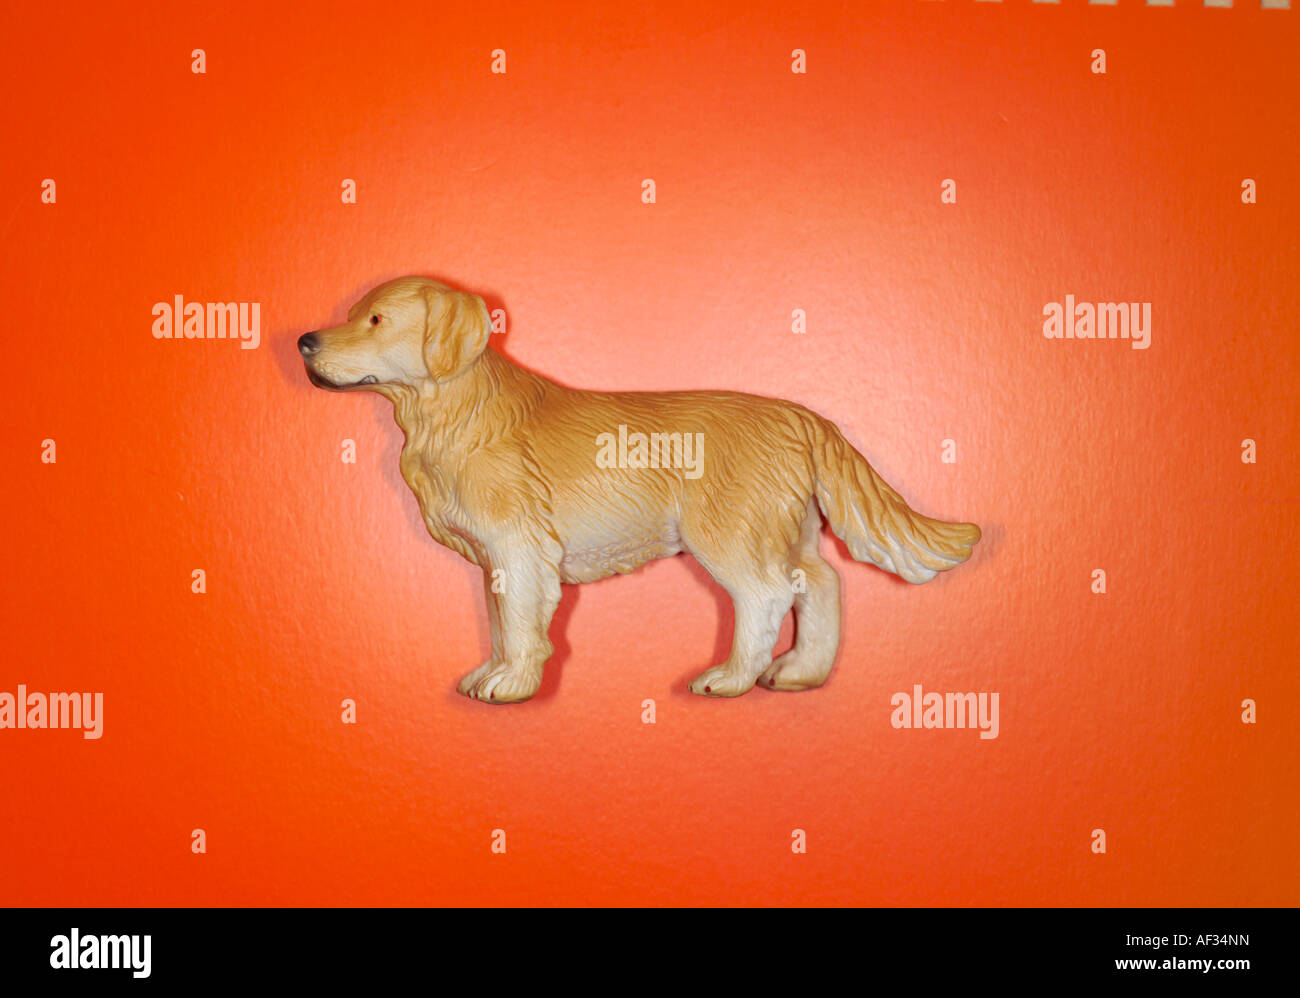 Schleich model dog on orange background Stock Photo